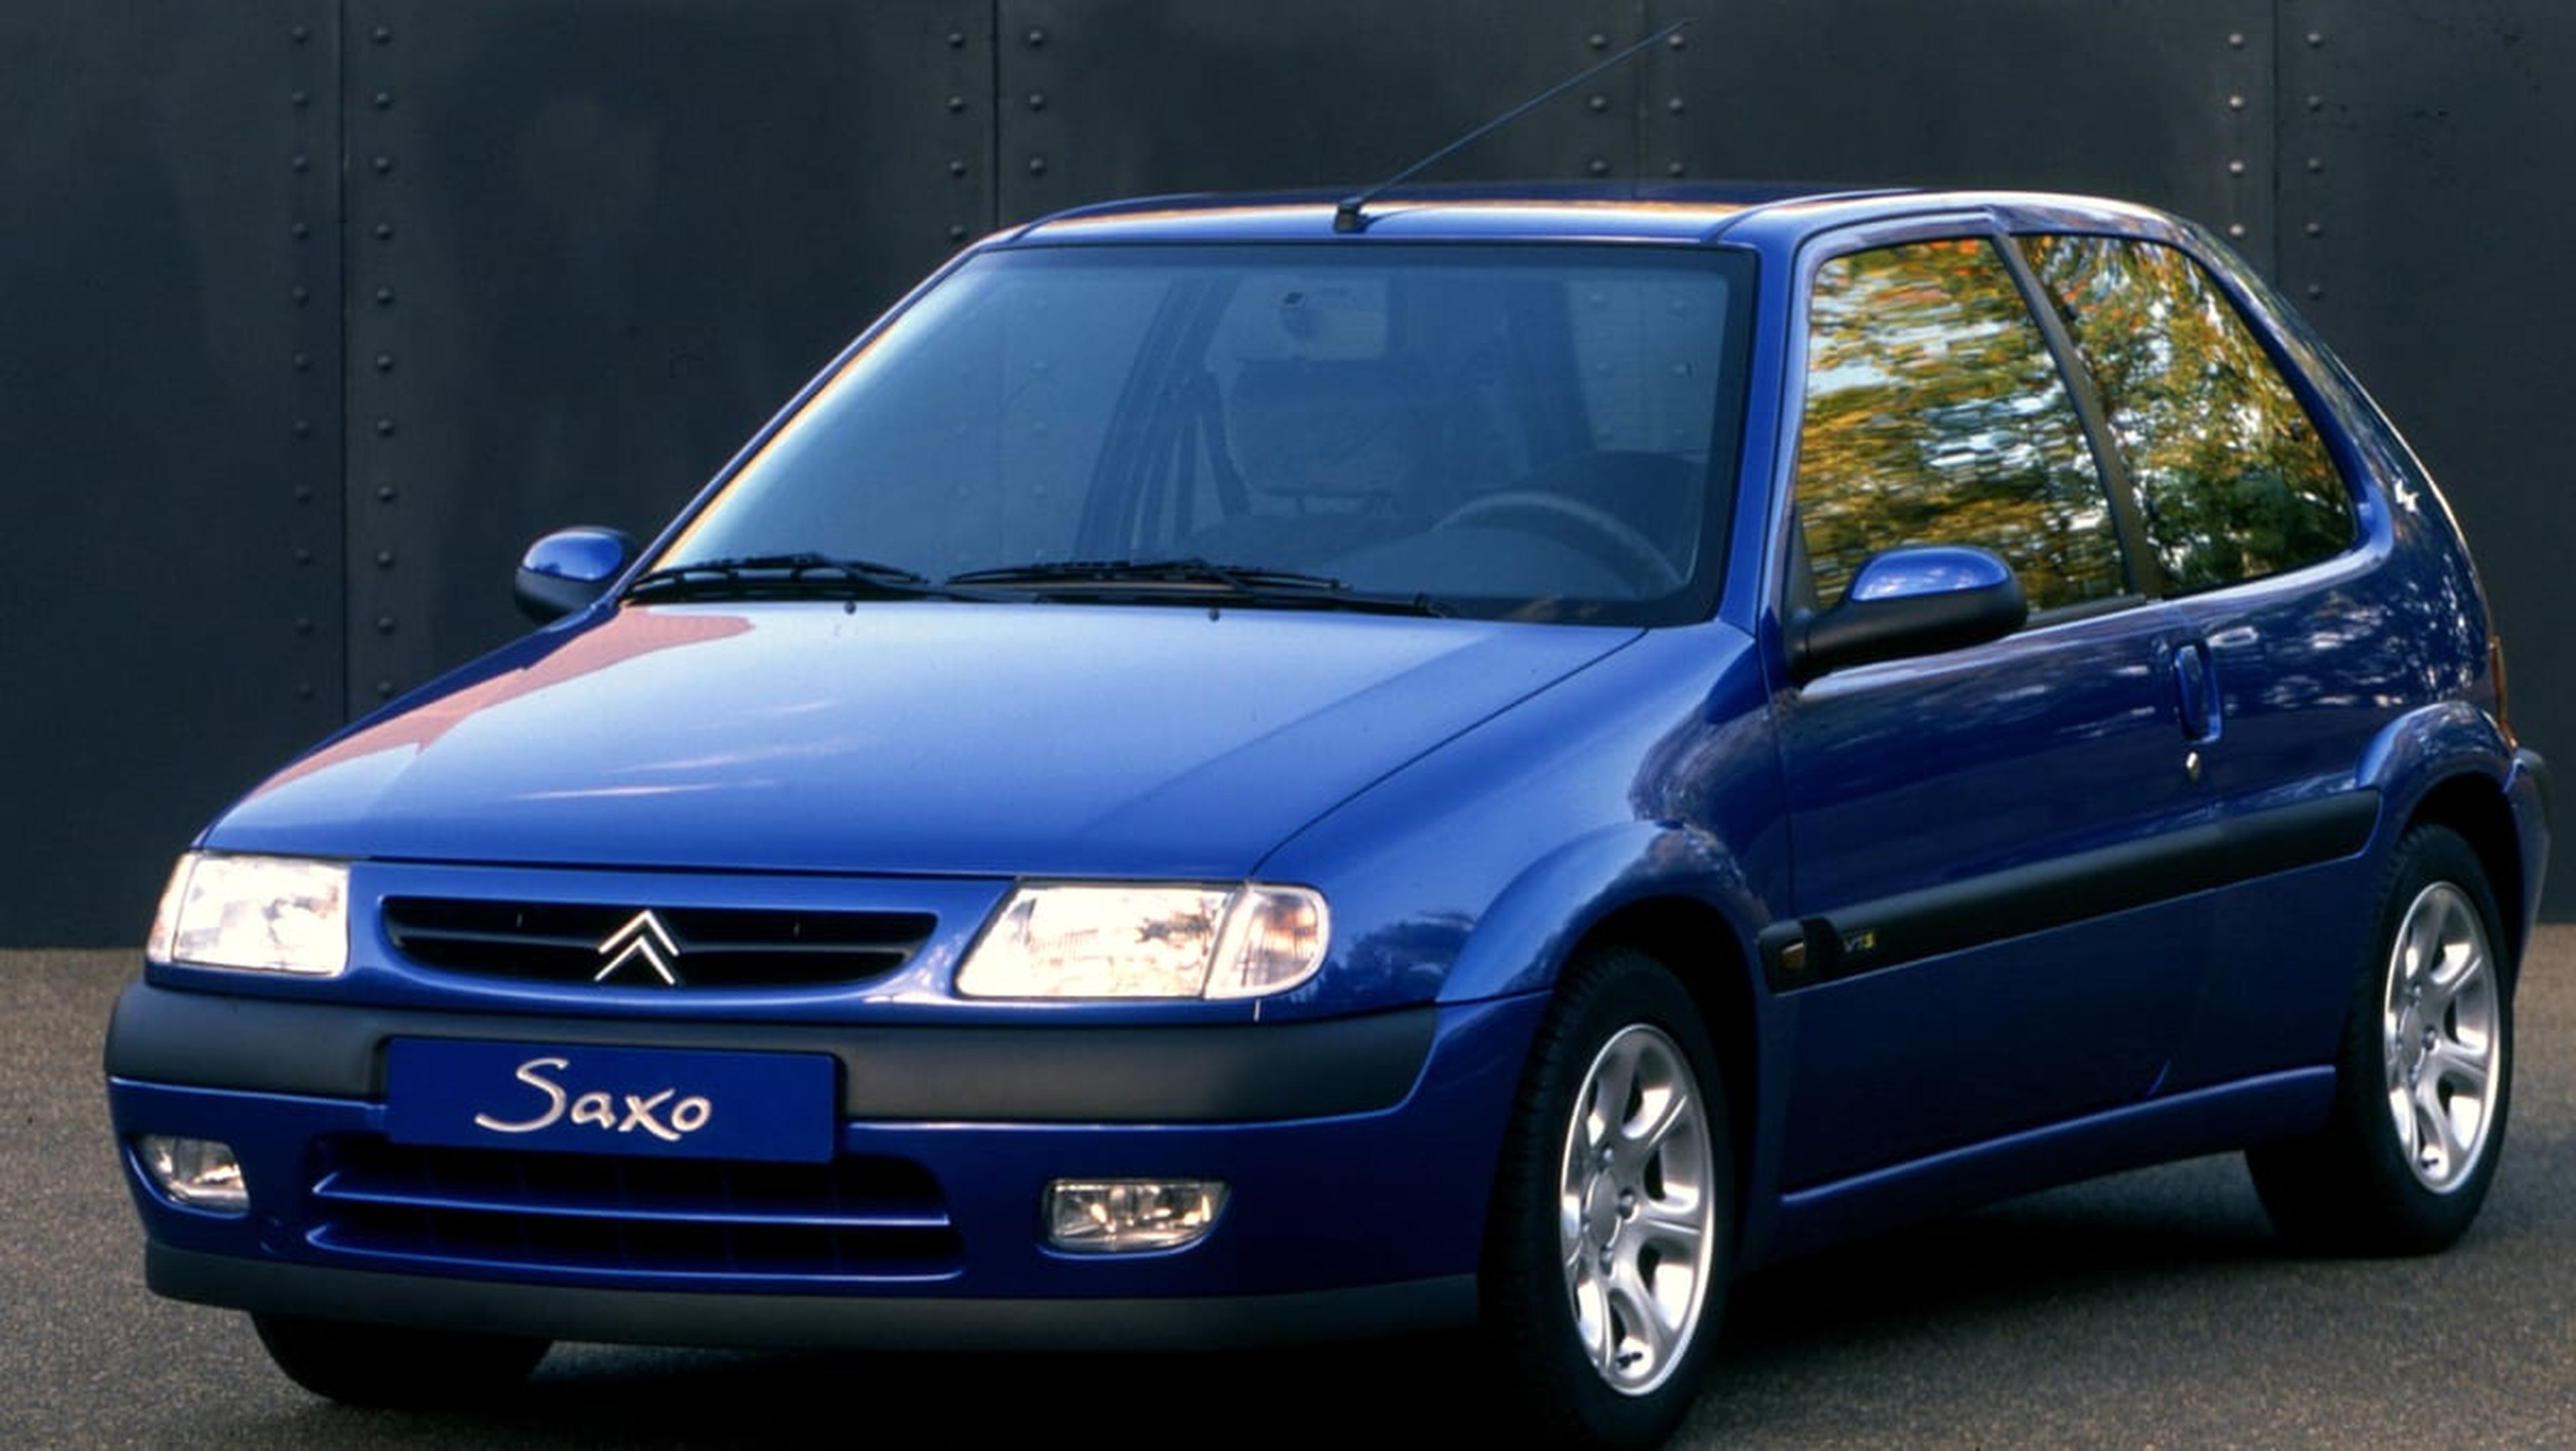 Citroën Saxo VTS frontal